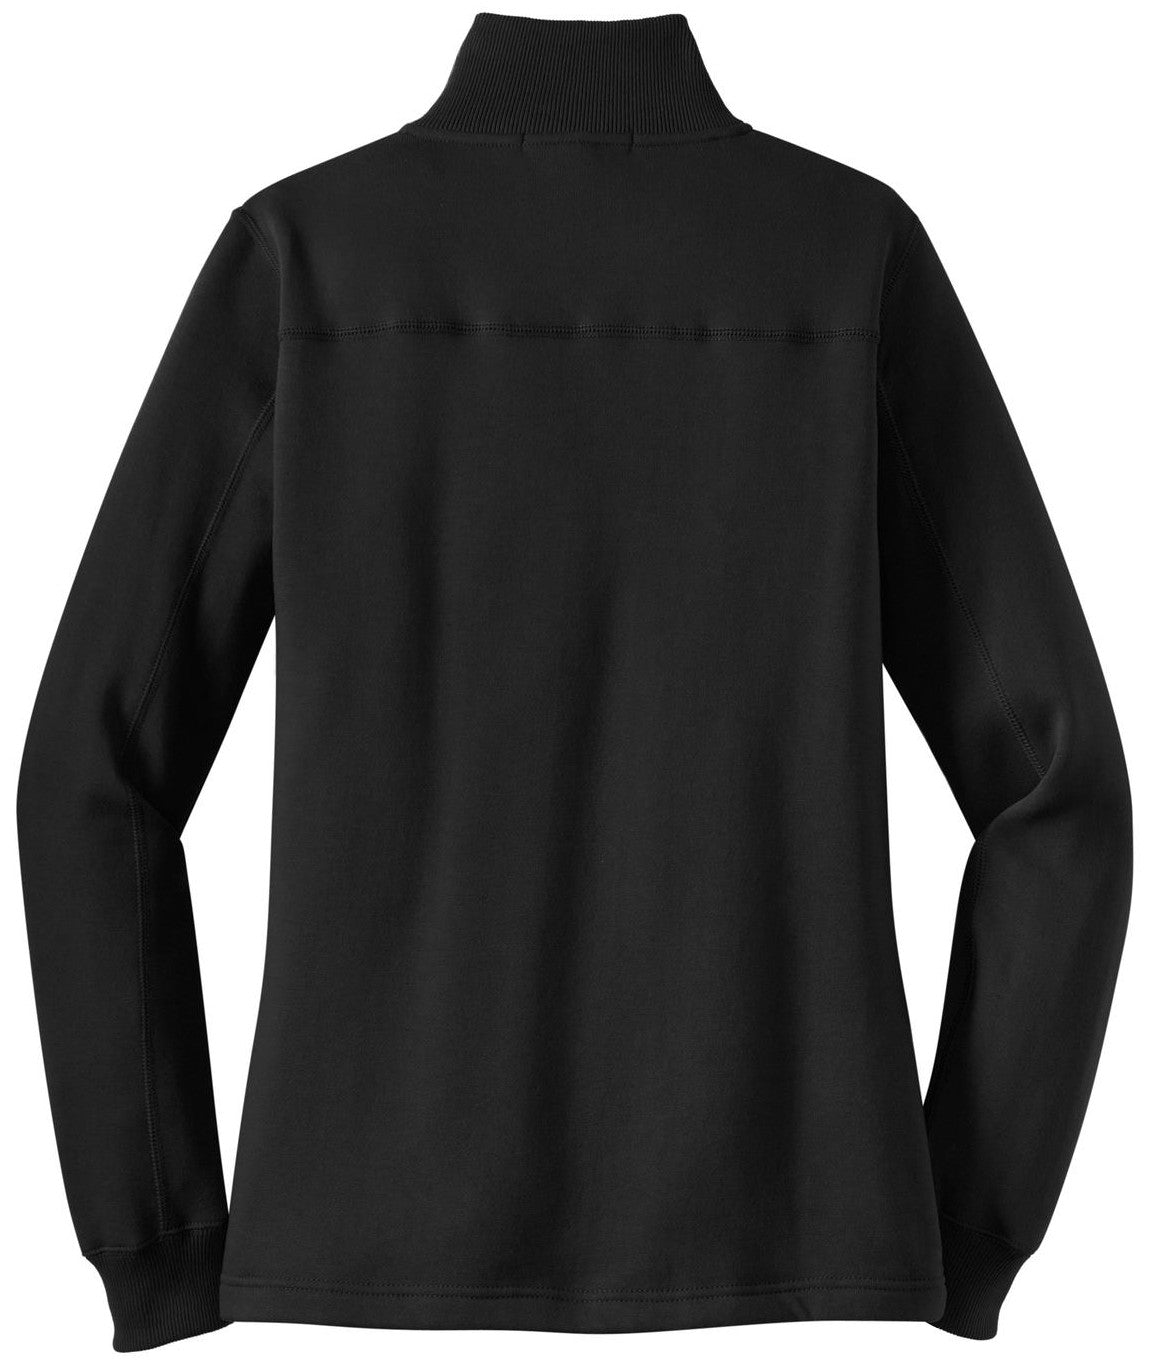 Mafoose Women's 1/4 Zip Sweatshirt Black-Back